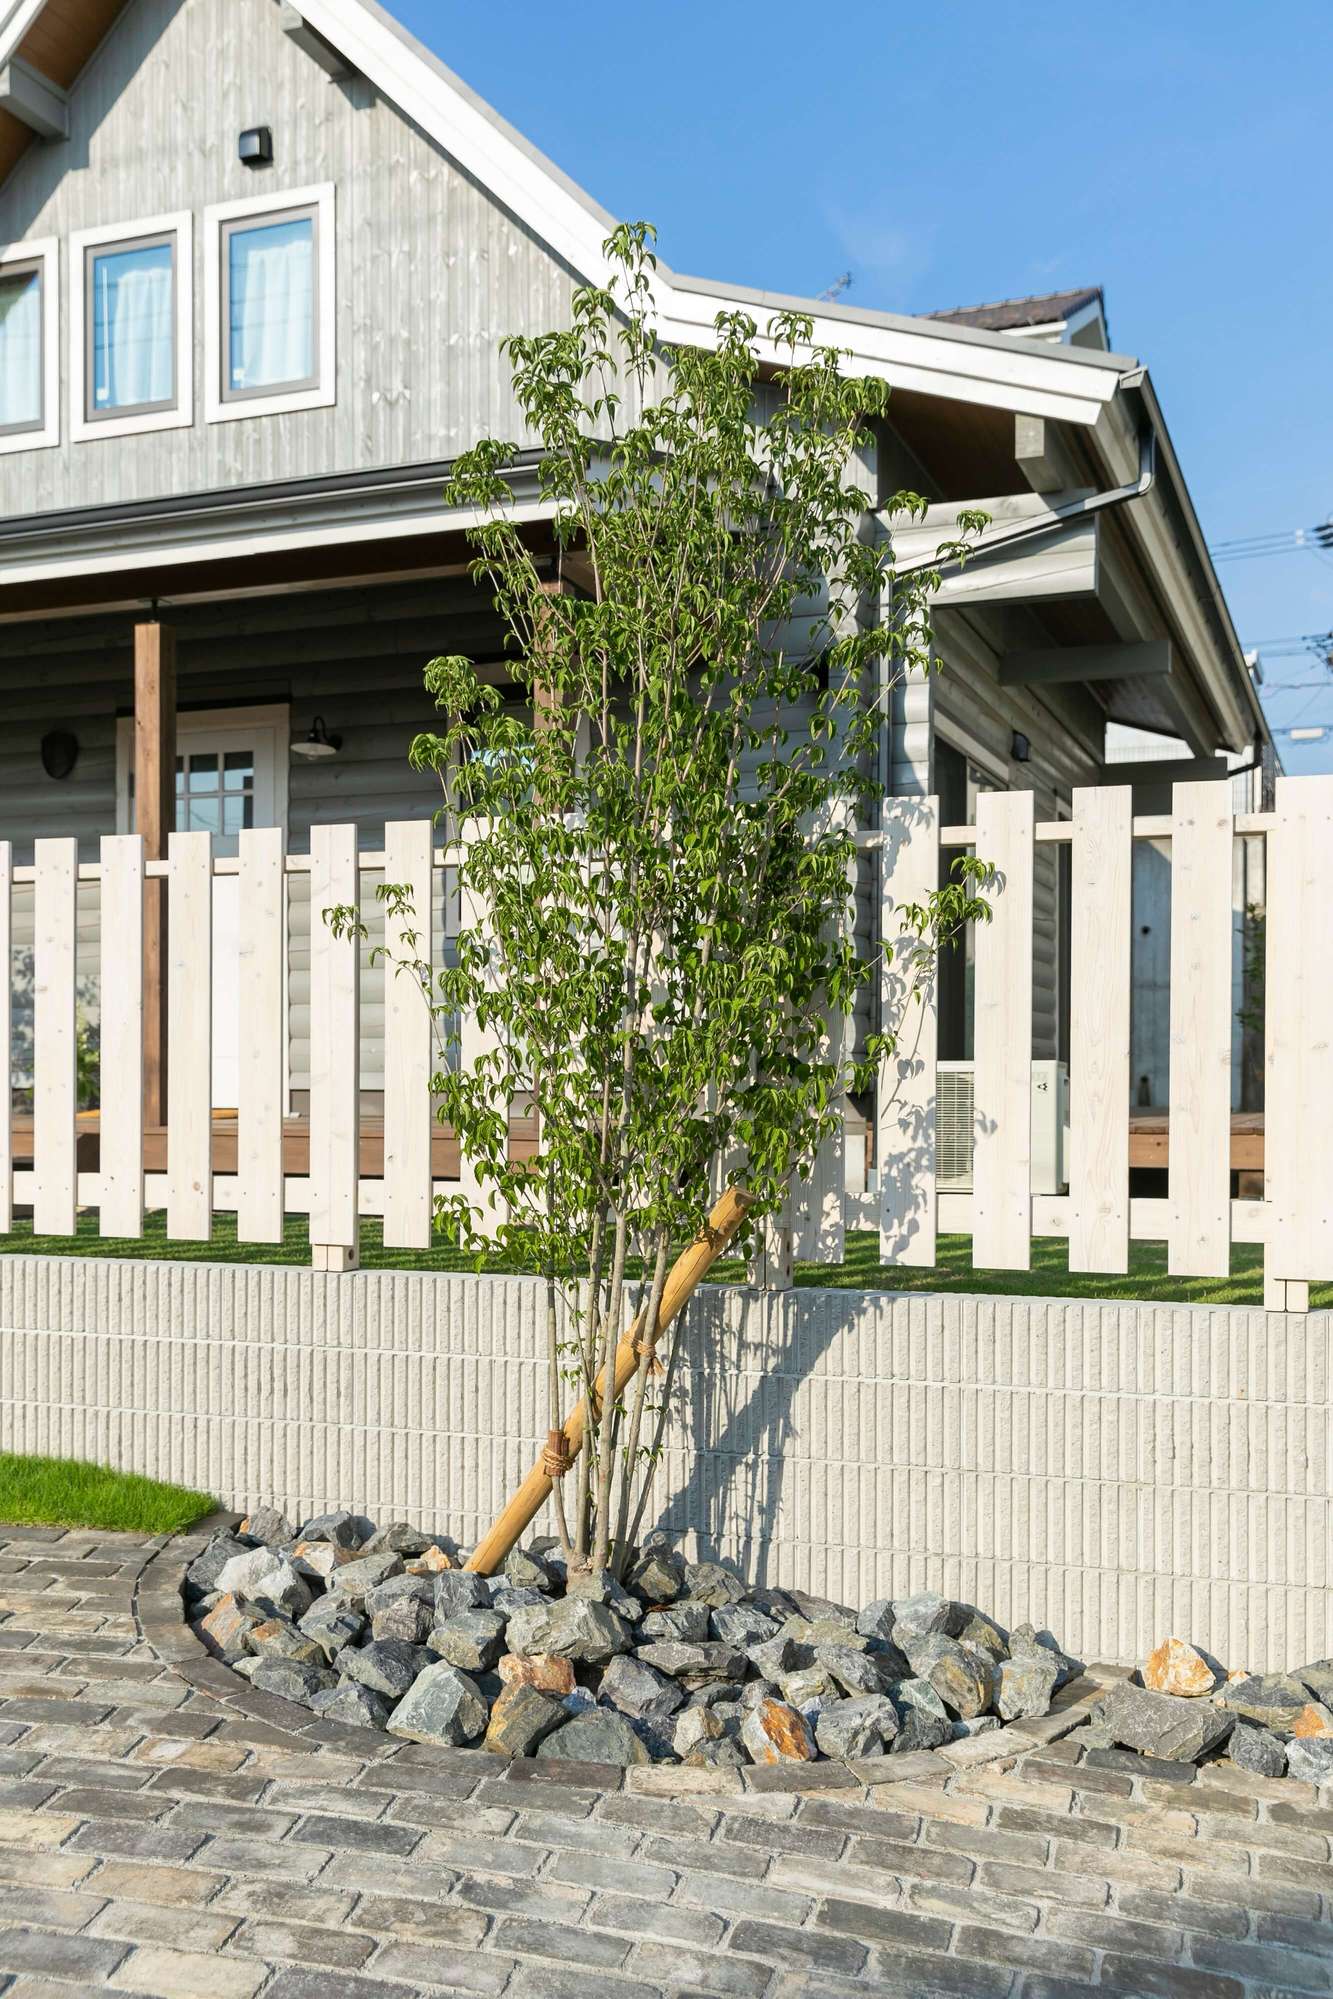 アールシーコア ナチュラル 古煉瓦 植栽 木製フェンス